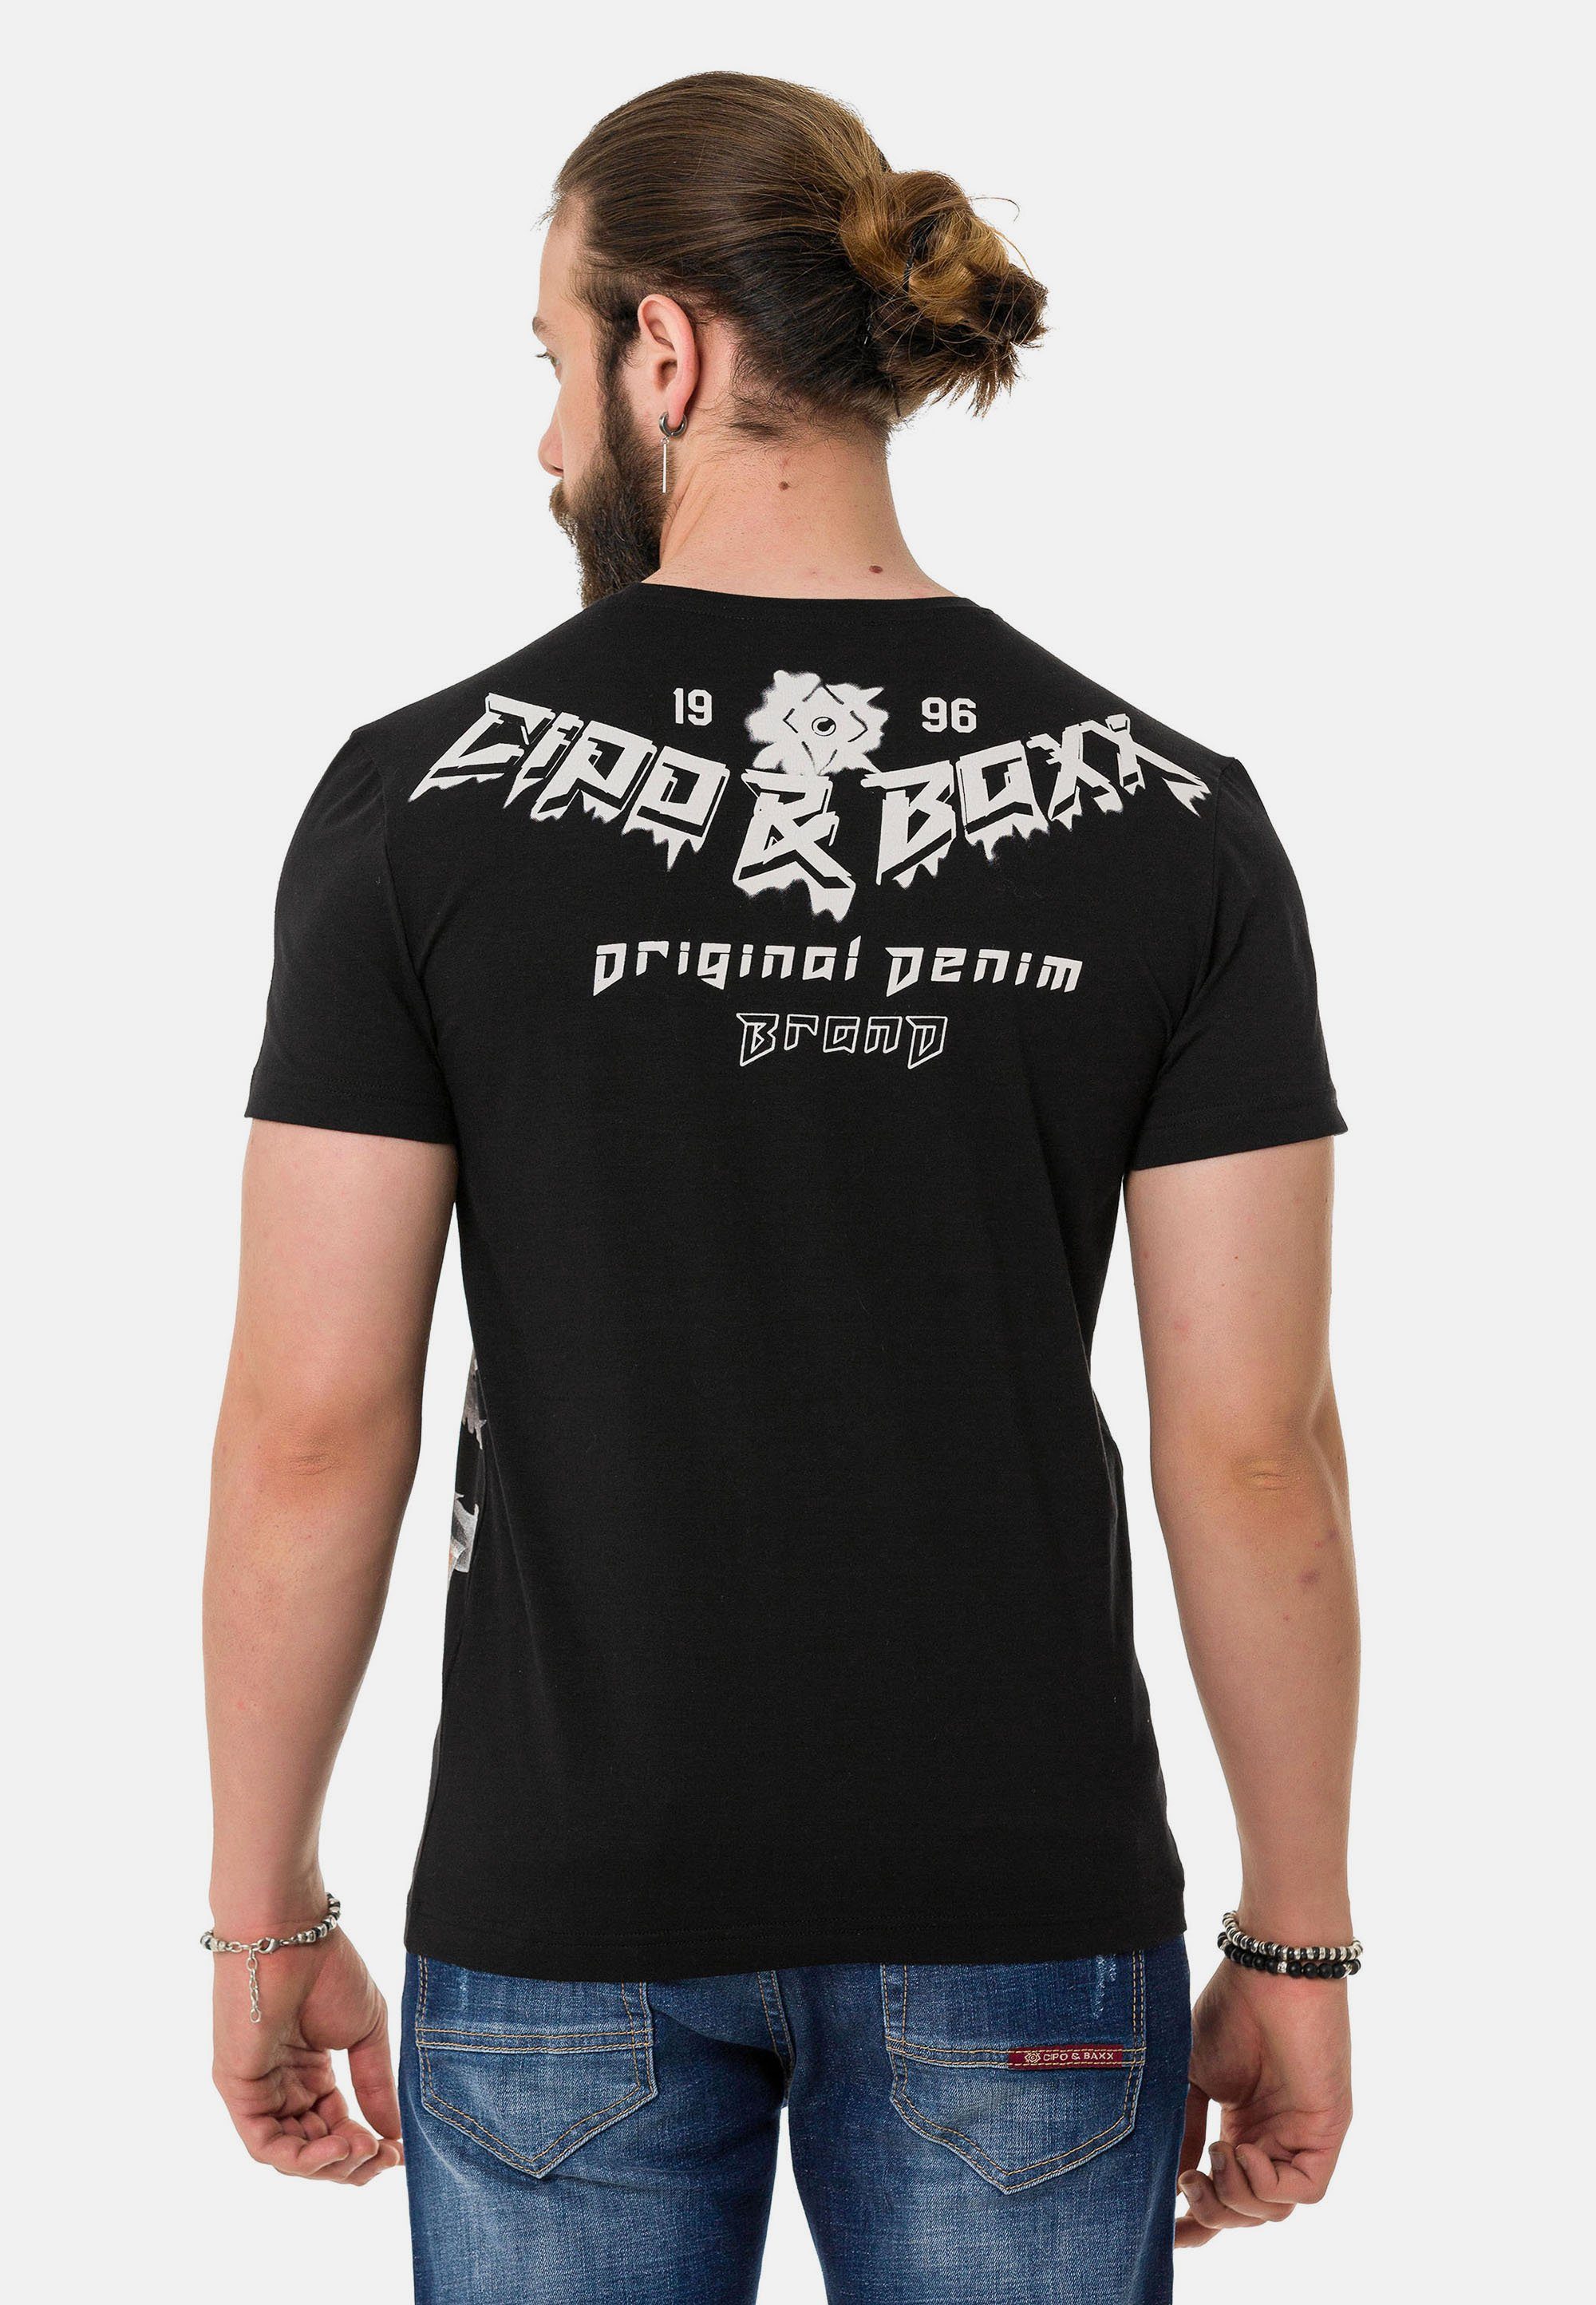 Cipo & schwarz Markenprint mit Baxx T-Shirt coolem